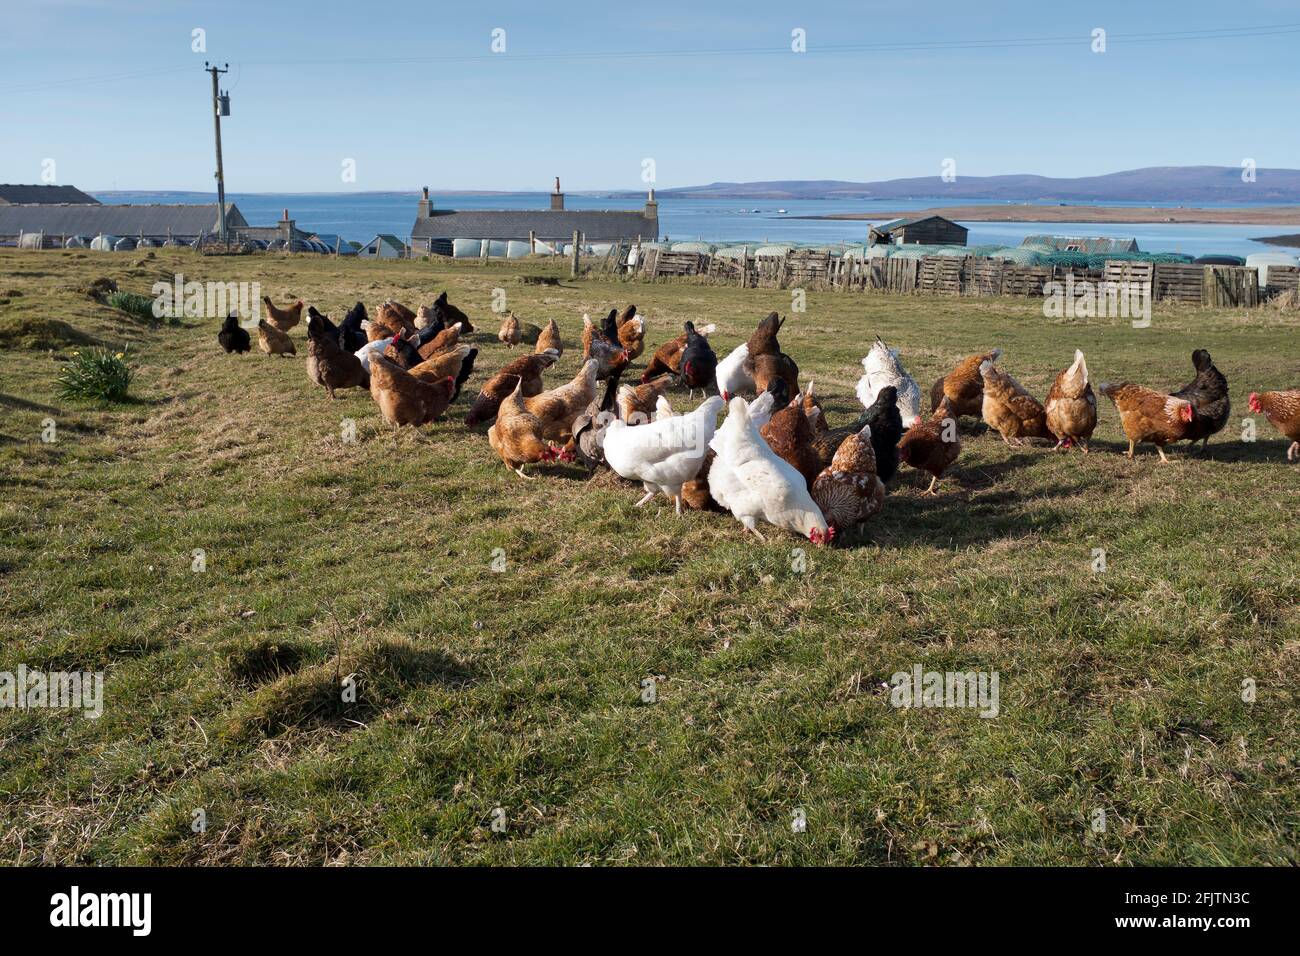 dh ÉLEVAGES de poulet ORKNEY poules de la ferme élevage gratuit poulets nourrissant des poules de freerange Grande-Bretagne Royaume-Uni Gallus gallus domesticus nourrissant de la volaille domestique Banque D'Images